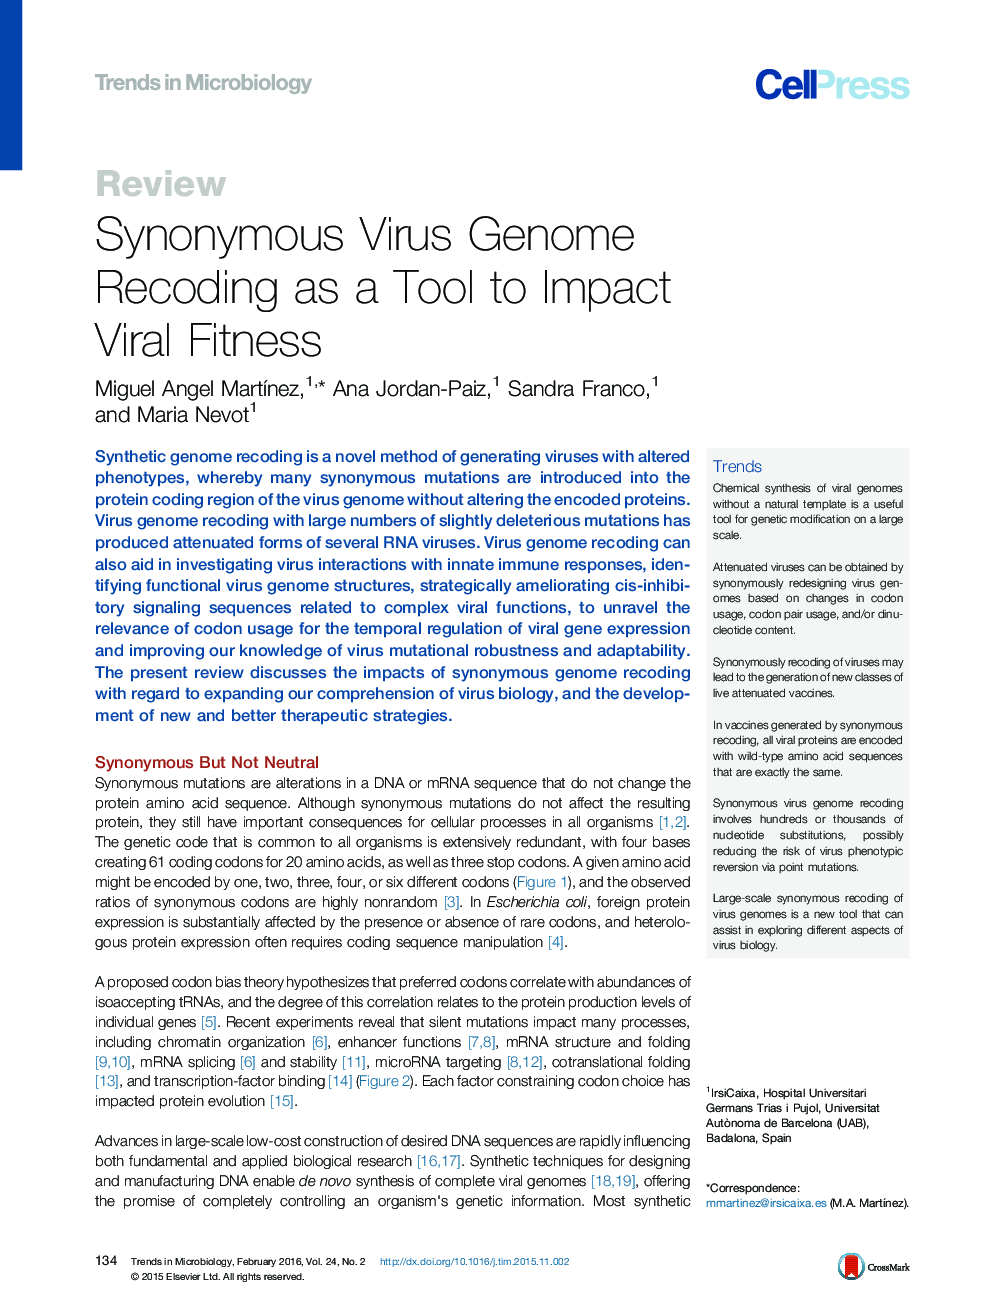 اصلاح ژنوم معروف به ویروس به عنوان یک ابزار برای تناسب اندام ویروسی 